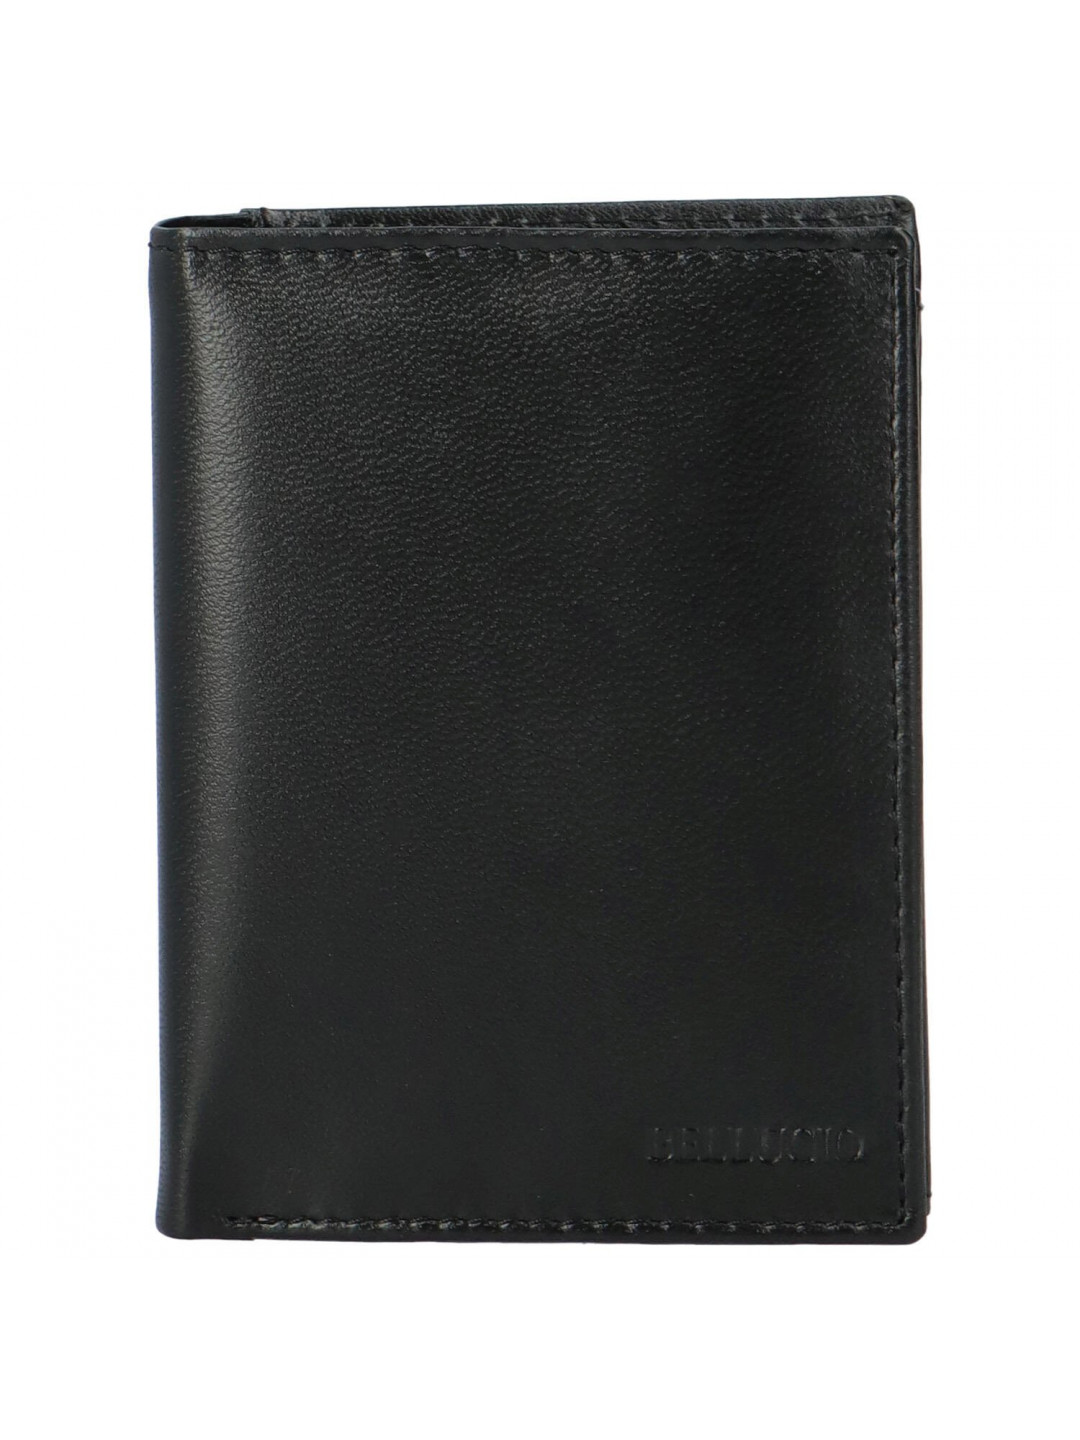 Pánská kožená peněženka černá – Bellugio Lotar